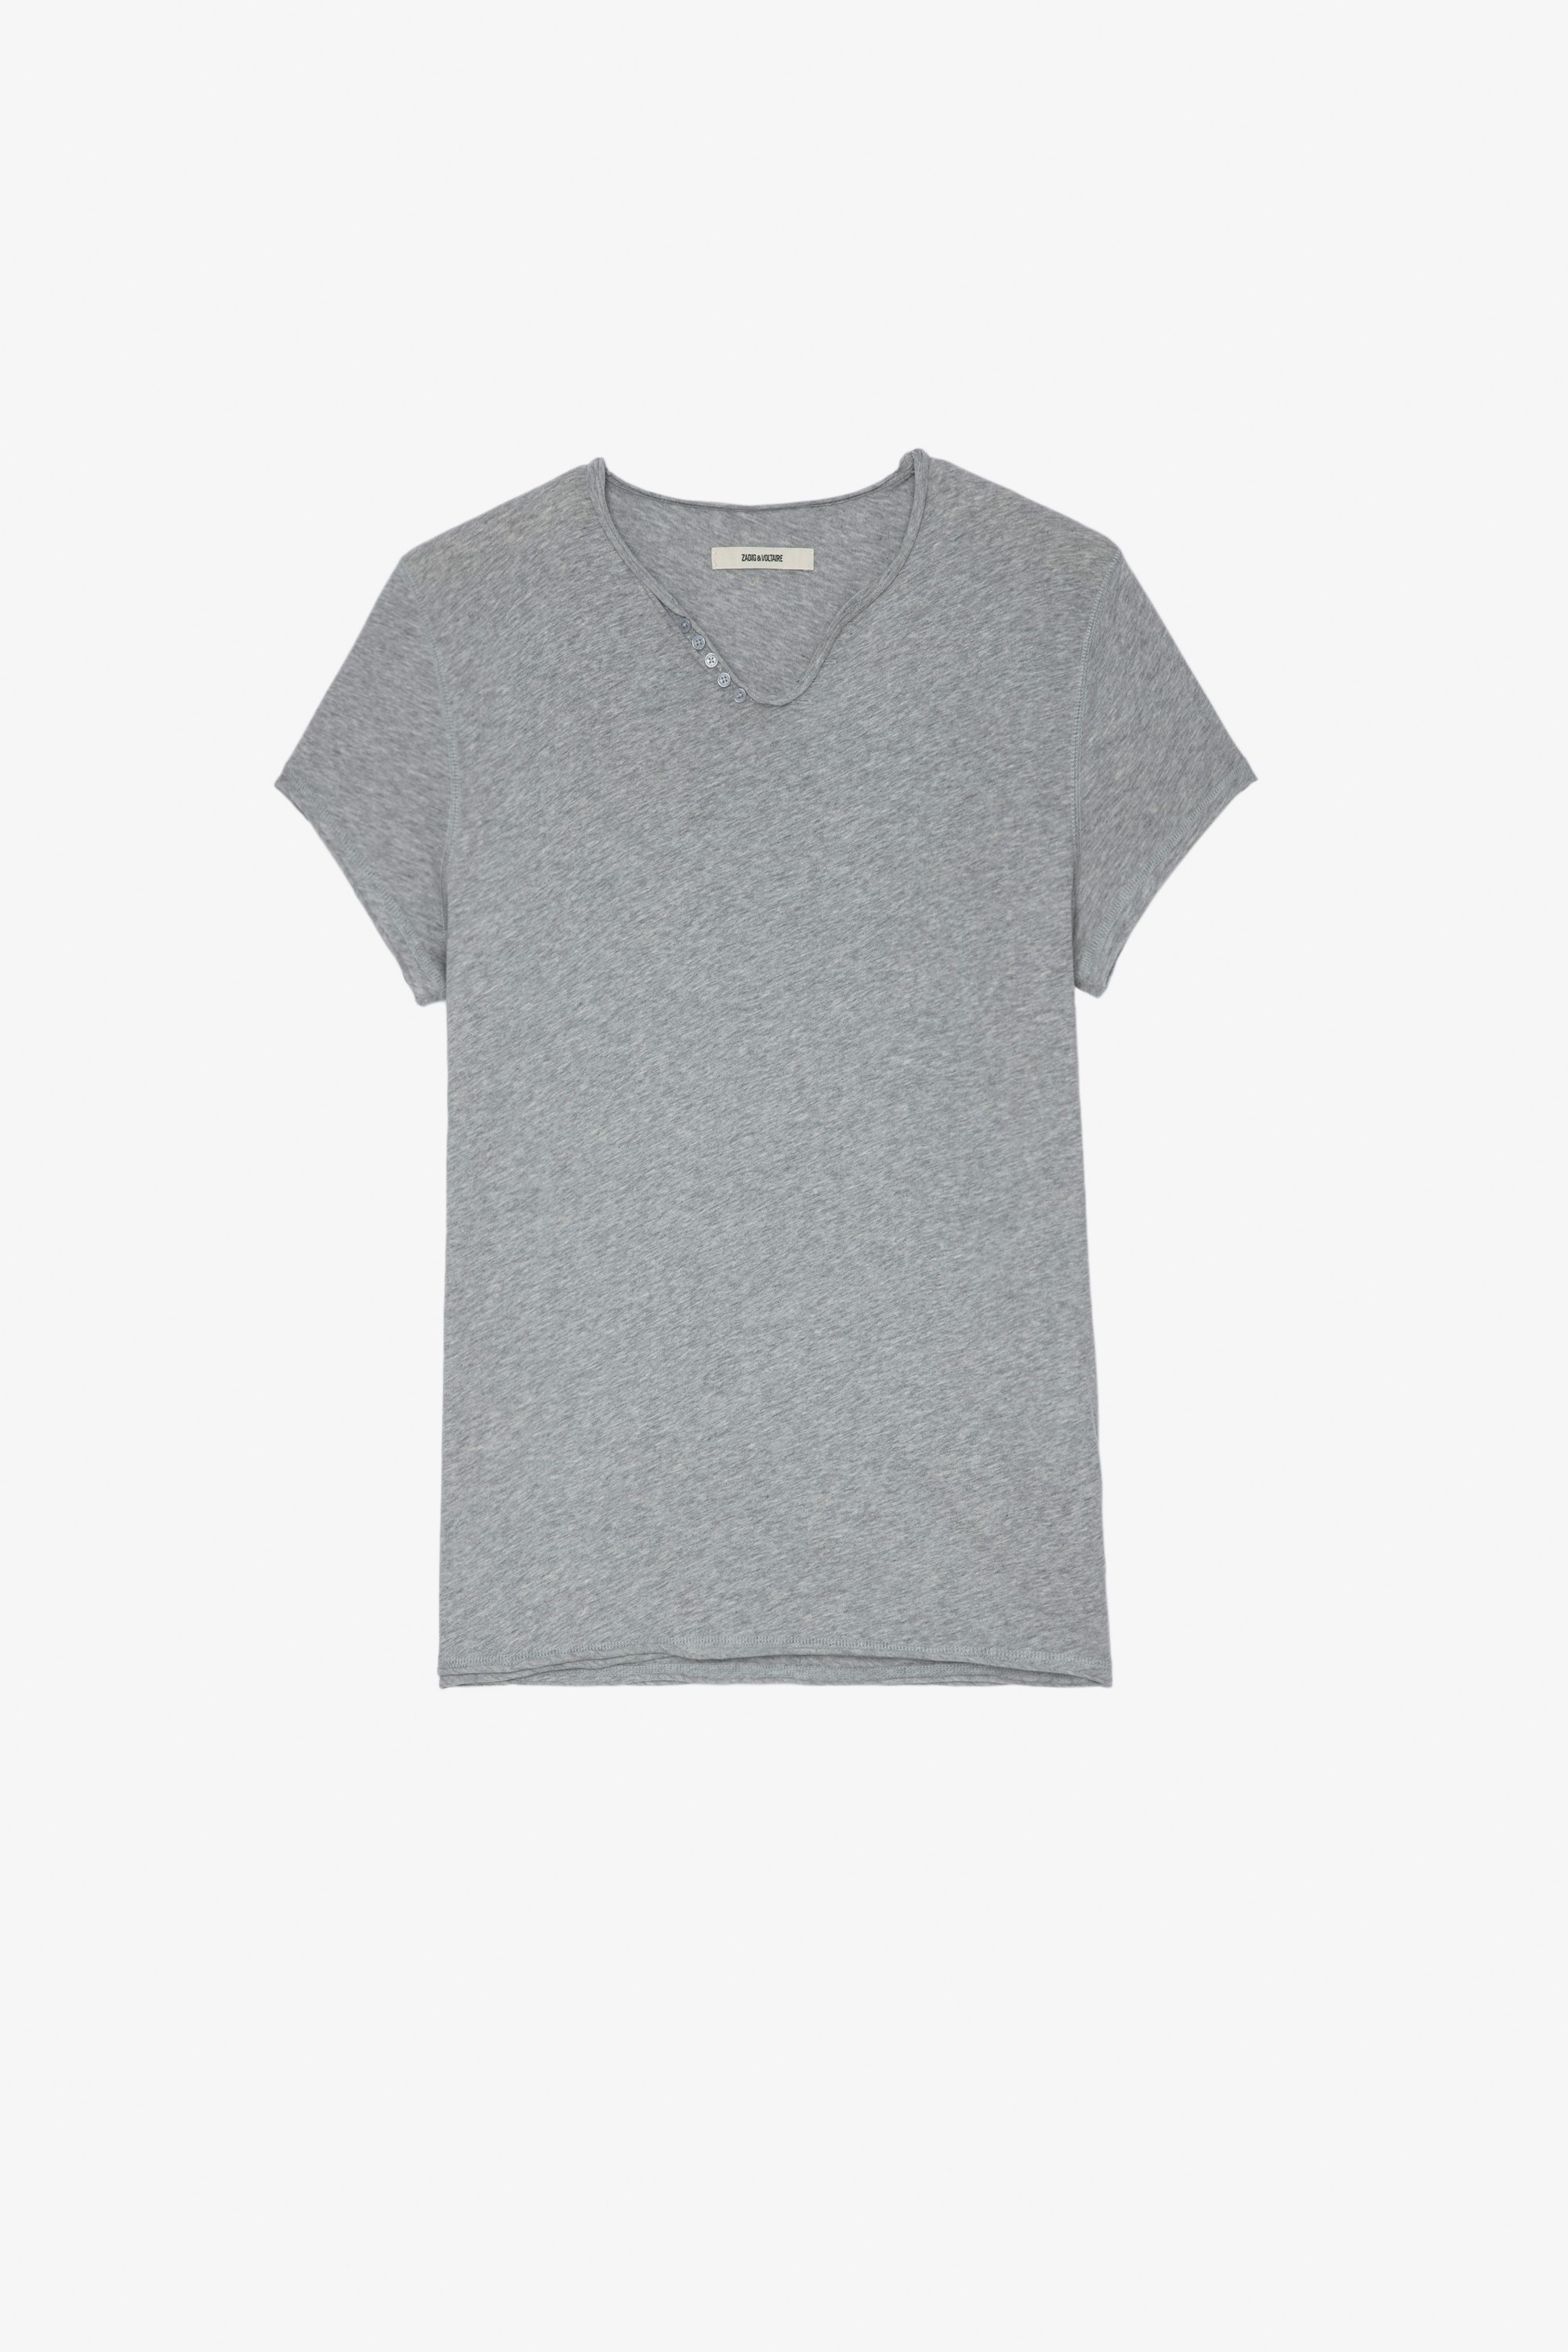 T-shirt Monastir T-shirt in cotone grigio screziato con collo a serafino e firma "Voltaire" Jormi sul retro - Uomo